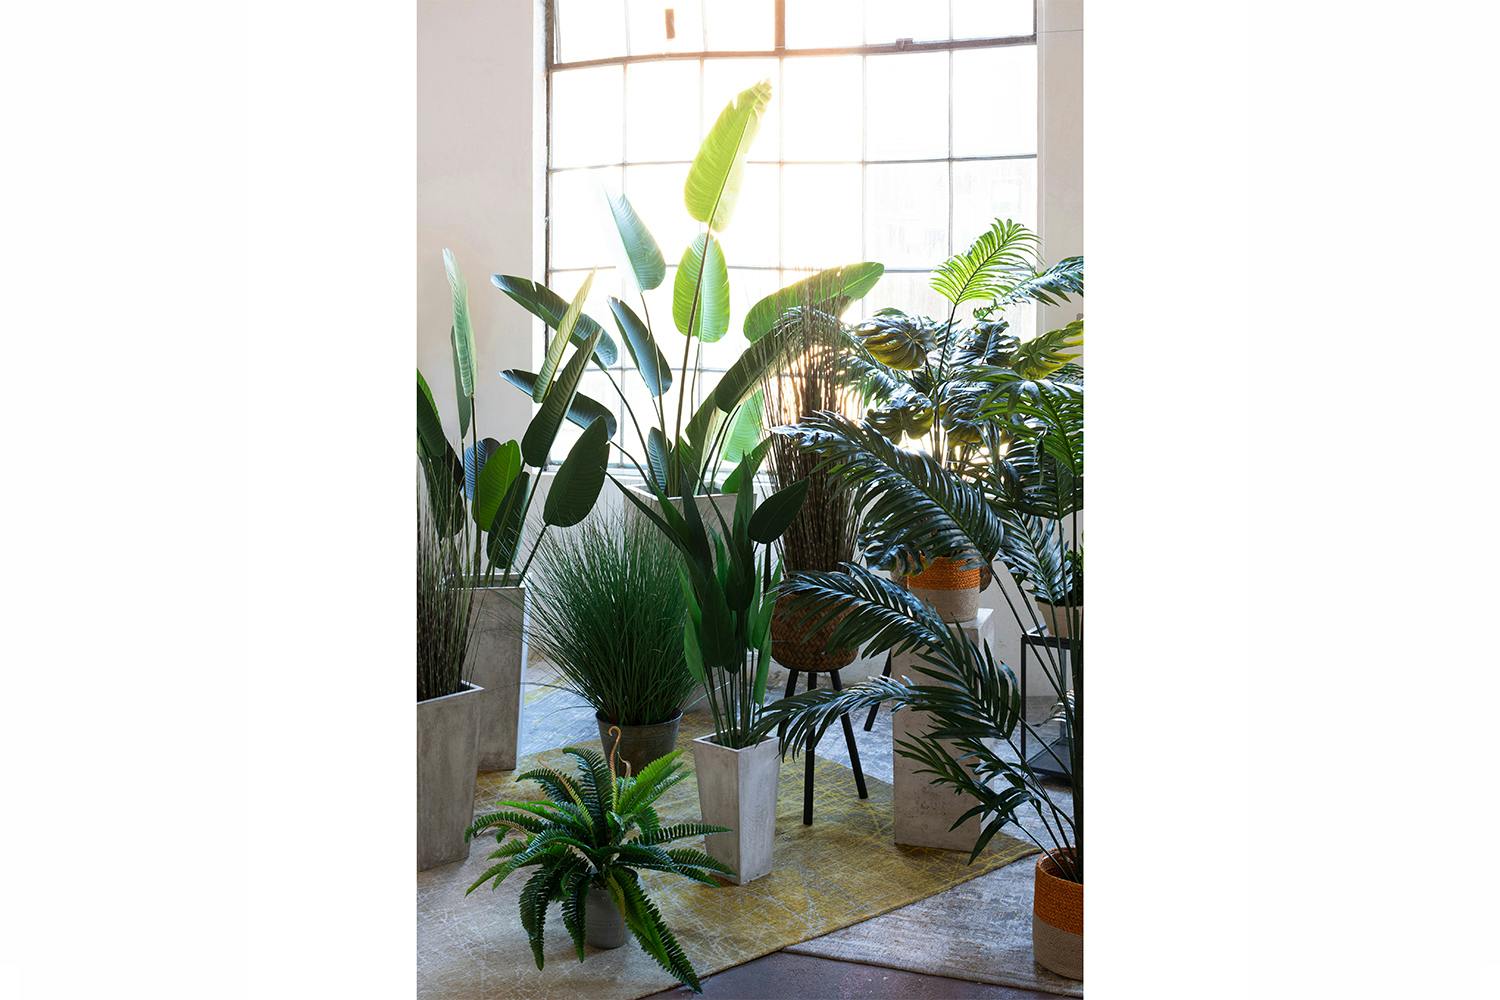 Palm Paradise Plant in Pot | 175 cm